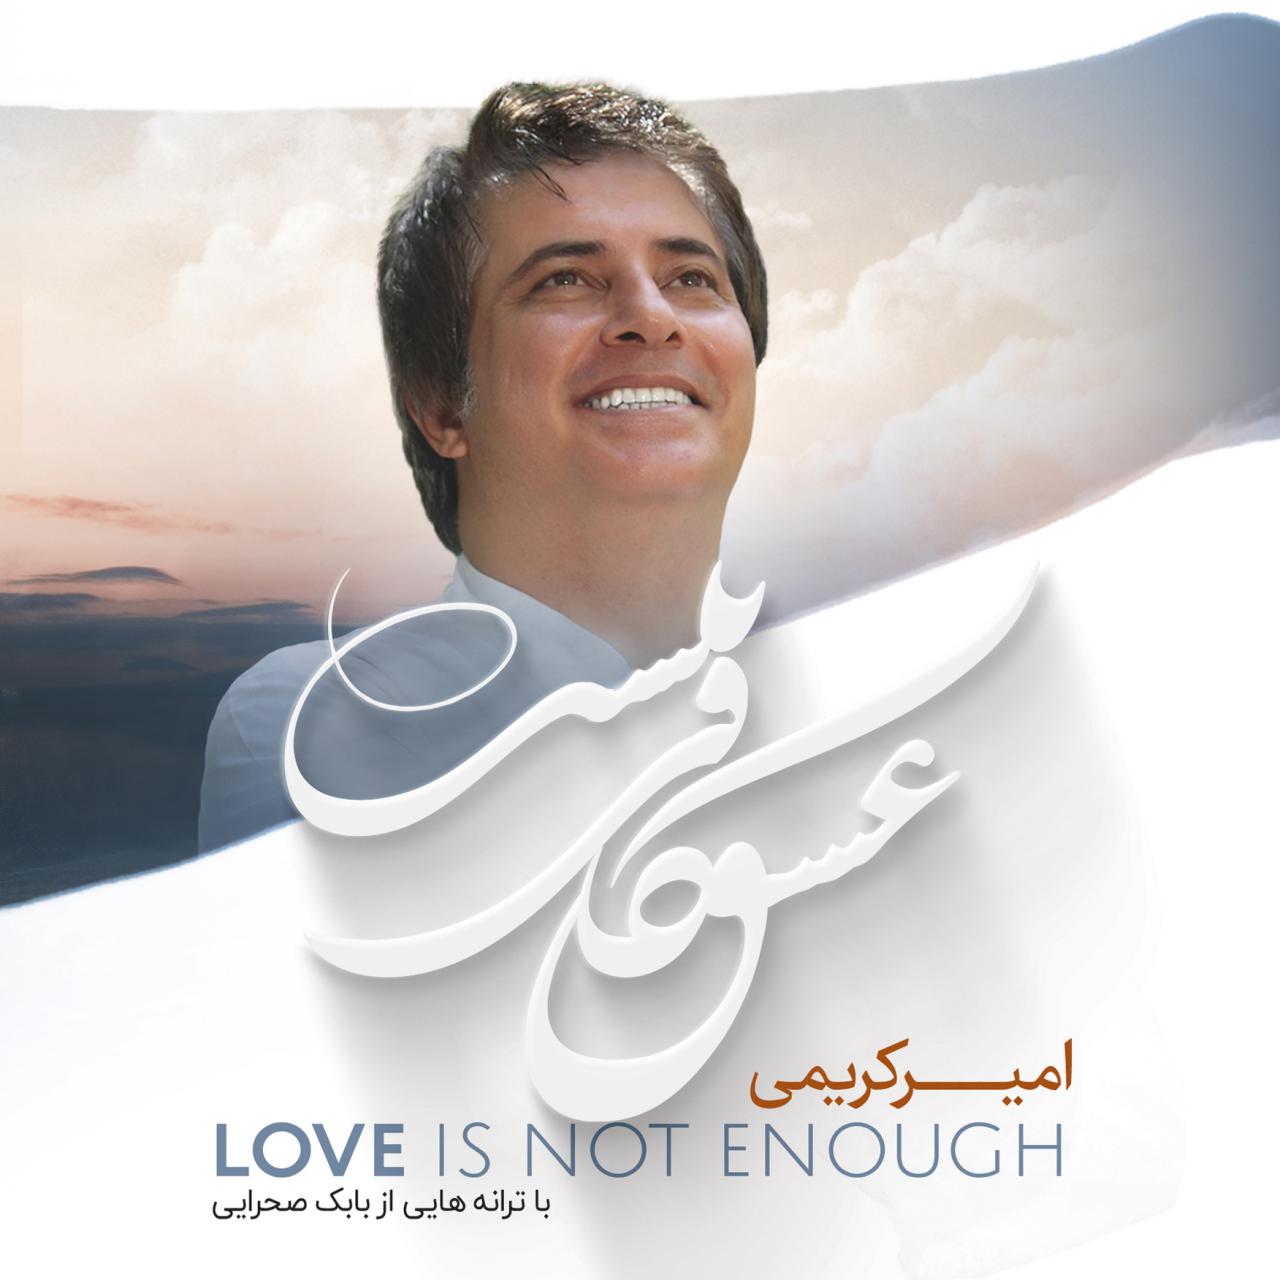 عشق کافی نیست